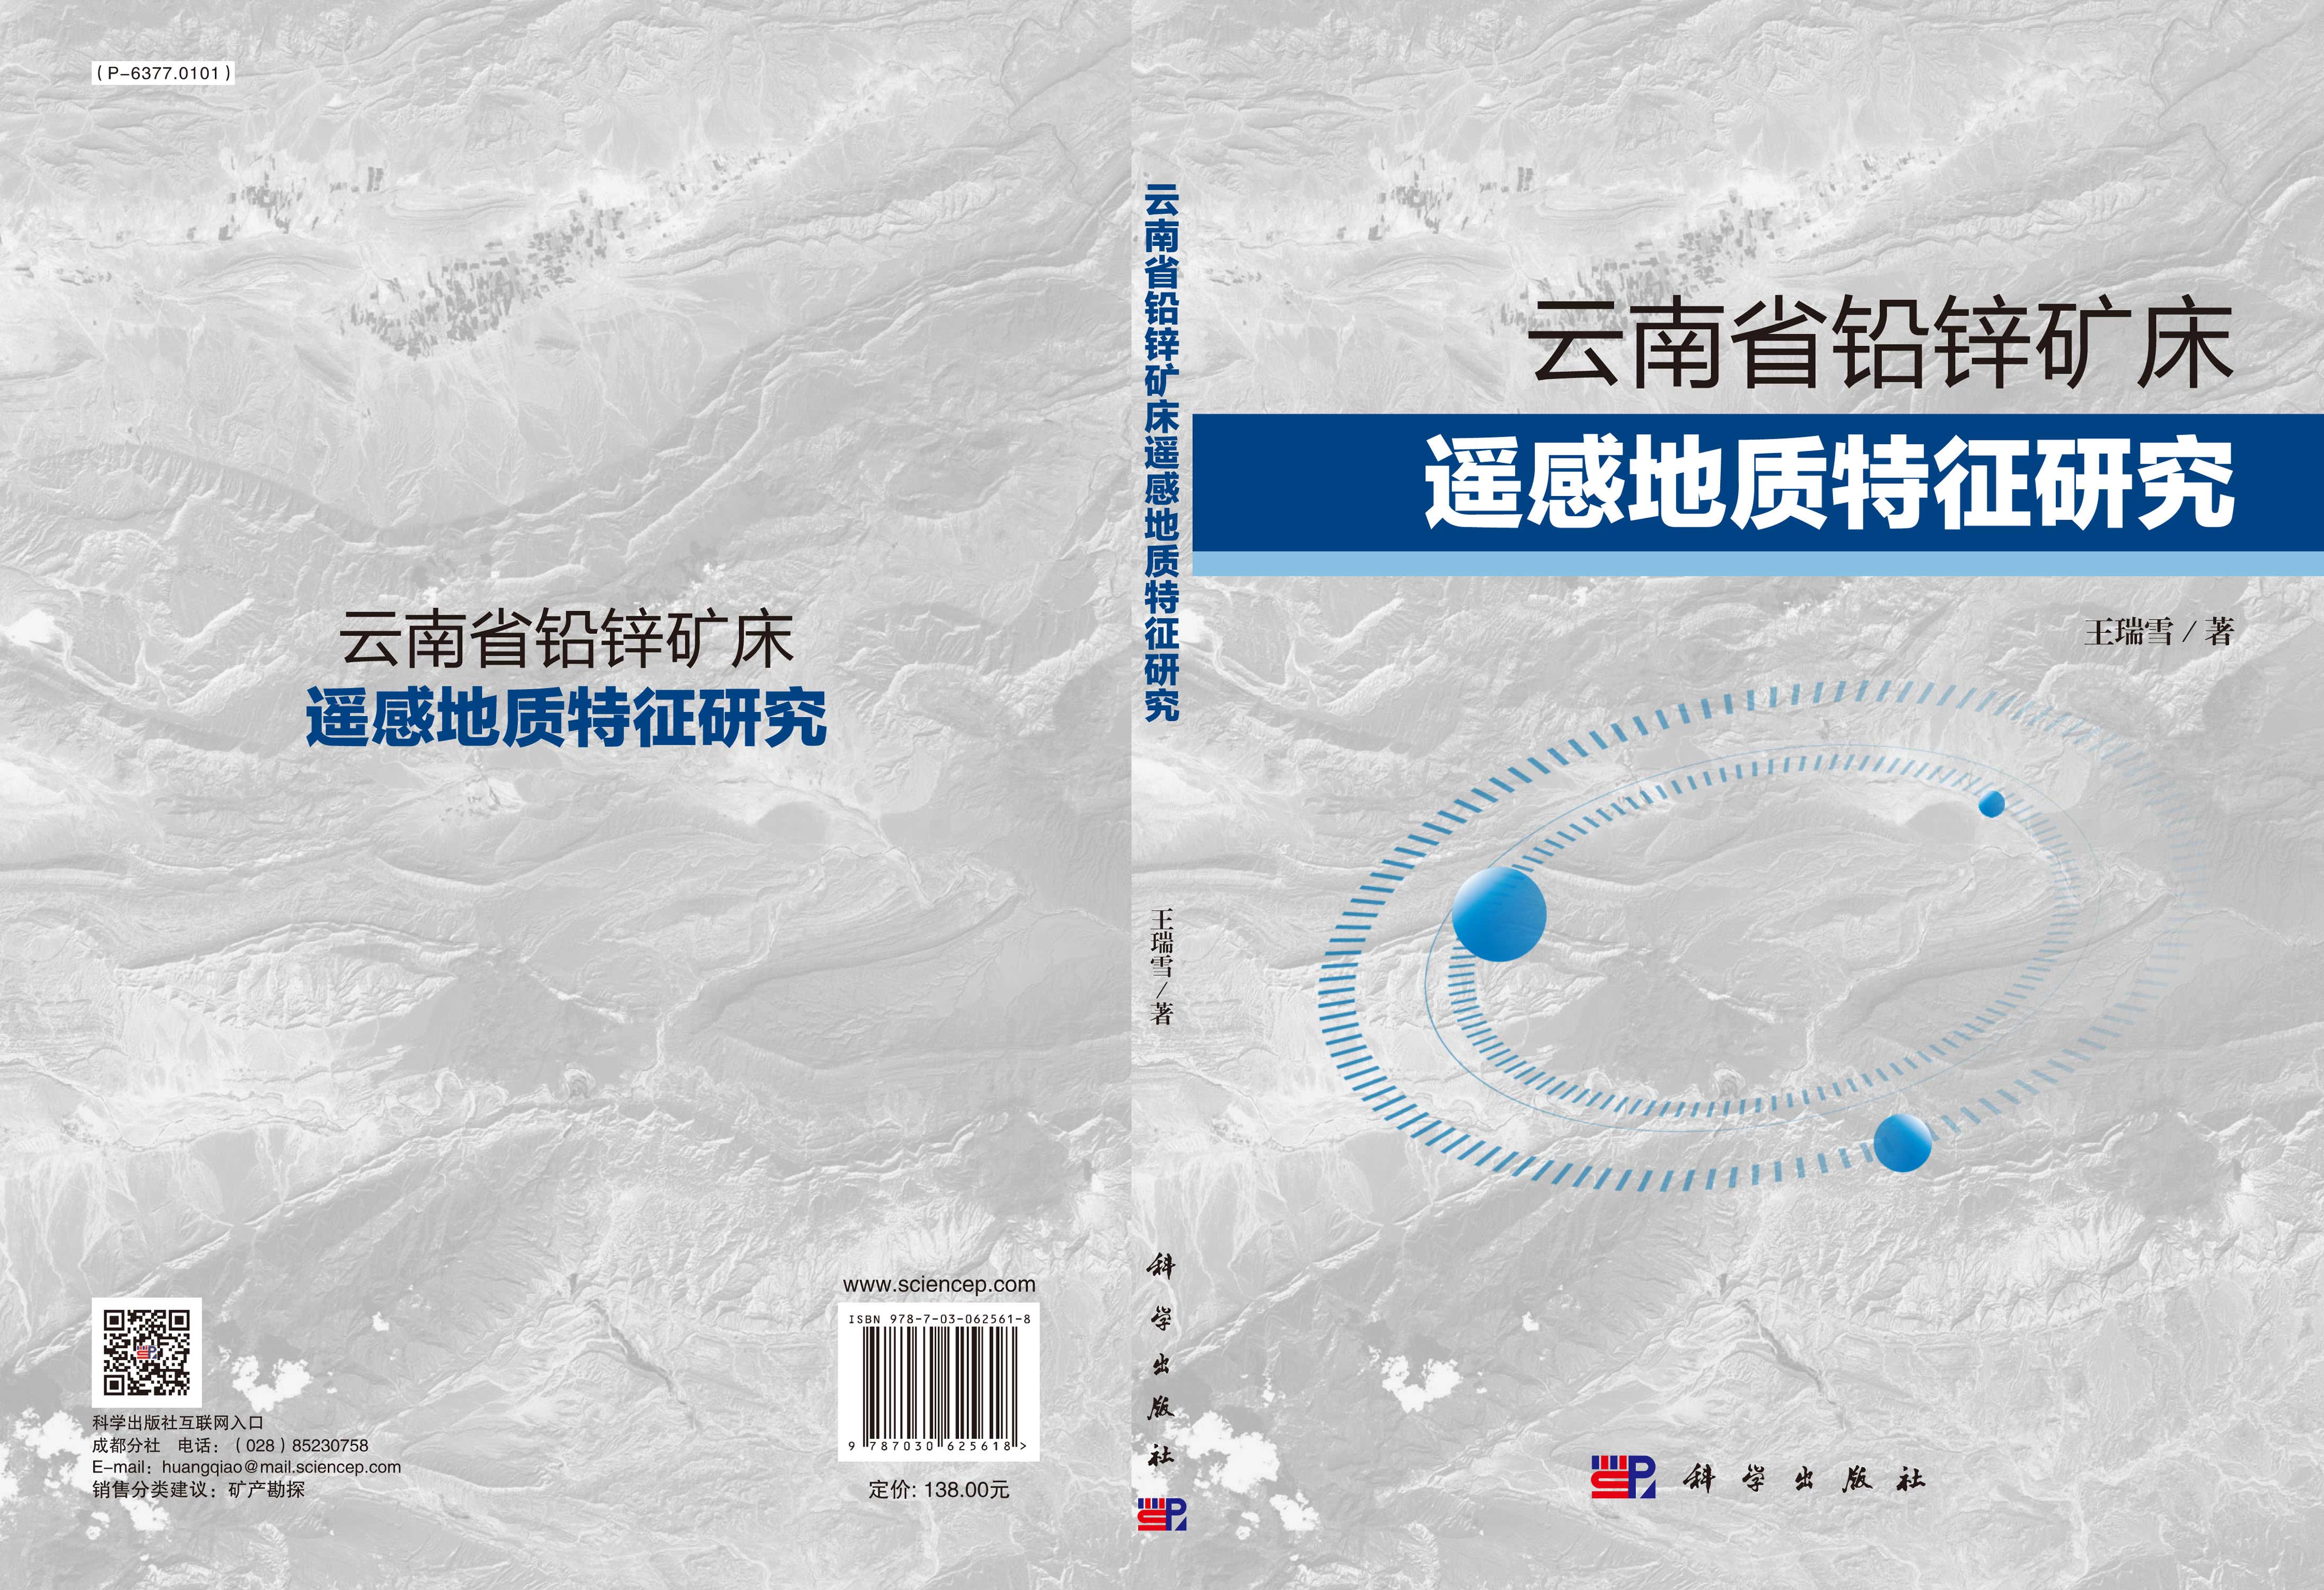 云南省铅锌矿床遥感地质特征研究